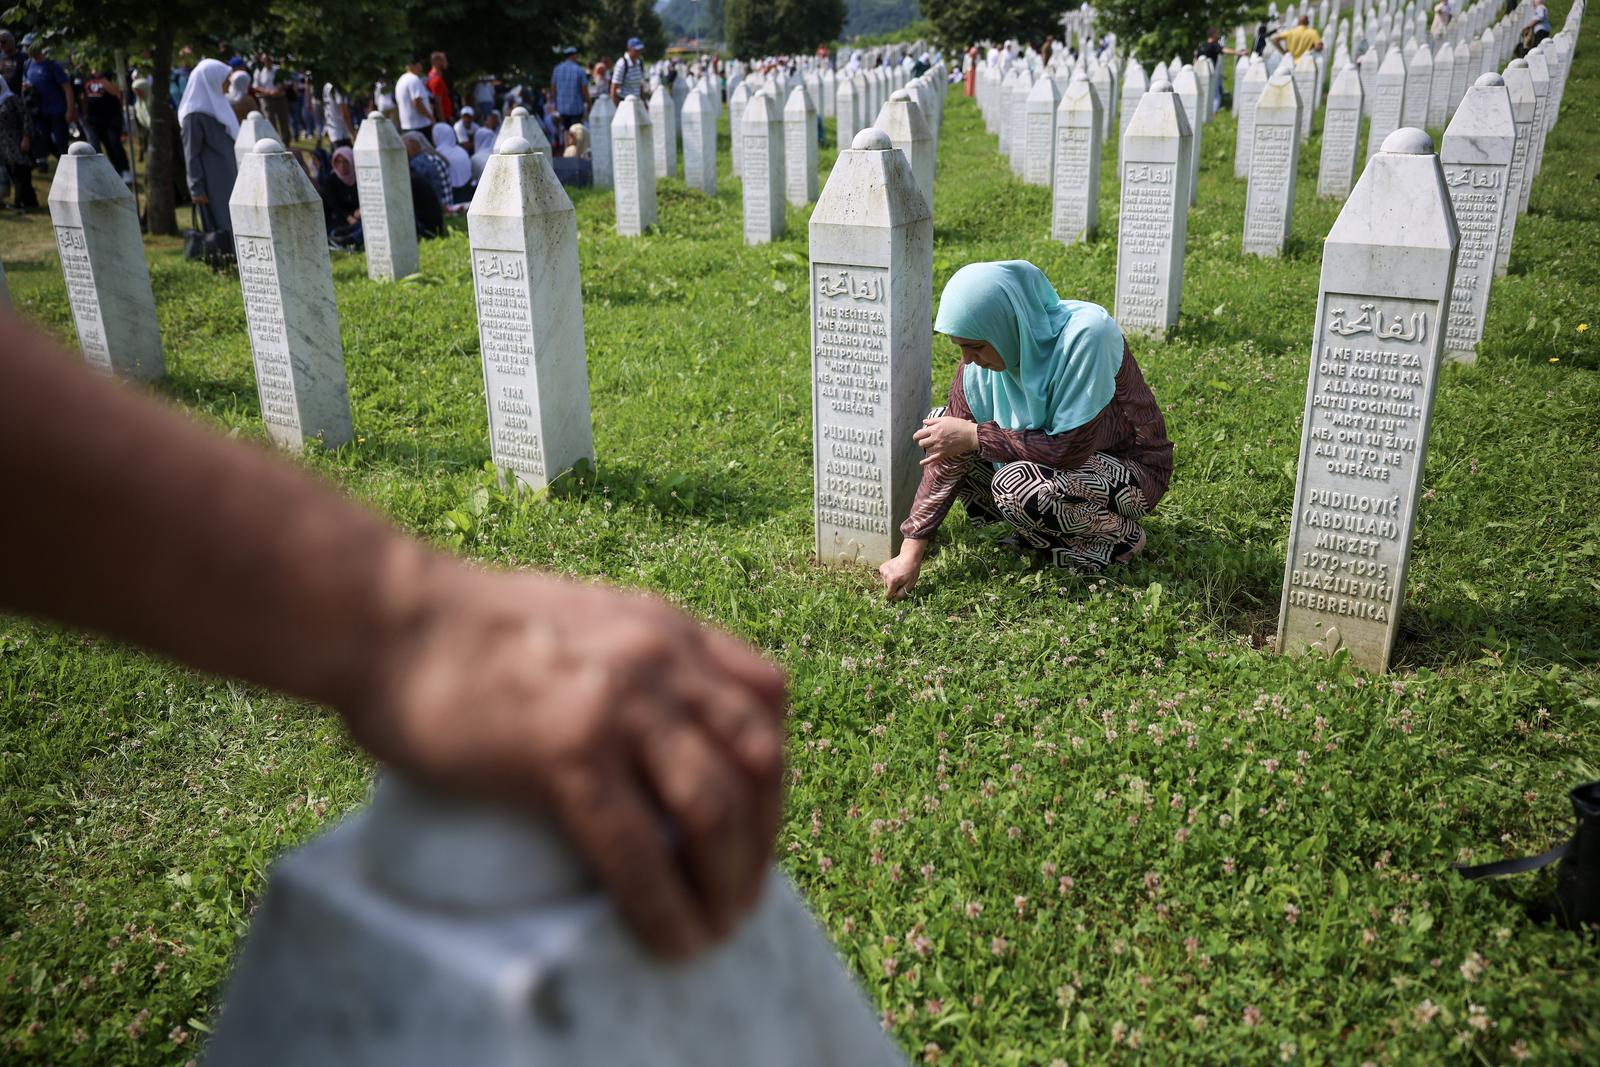 Memorijalni centar Potočari kod Srebrenice